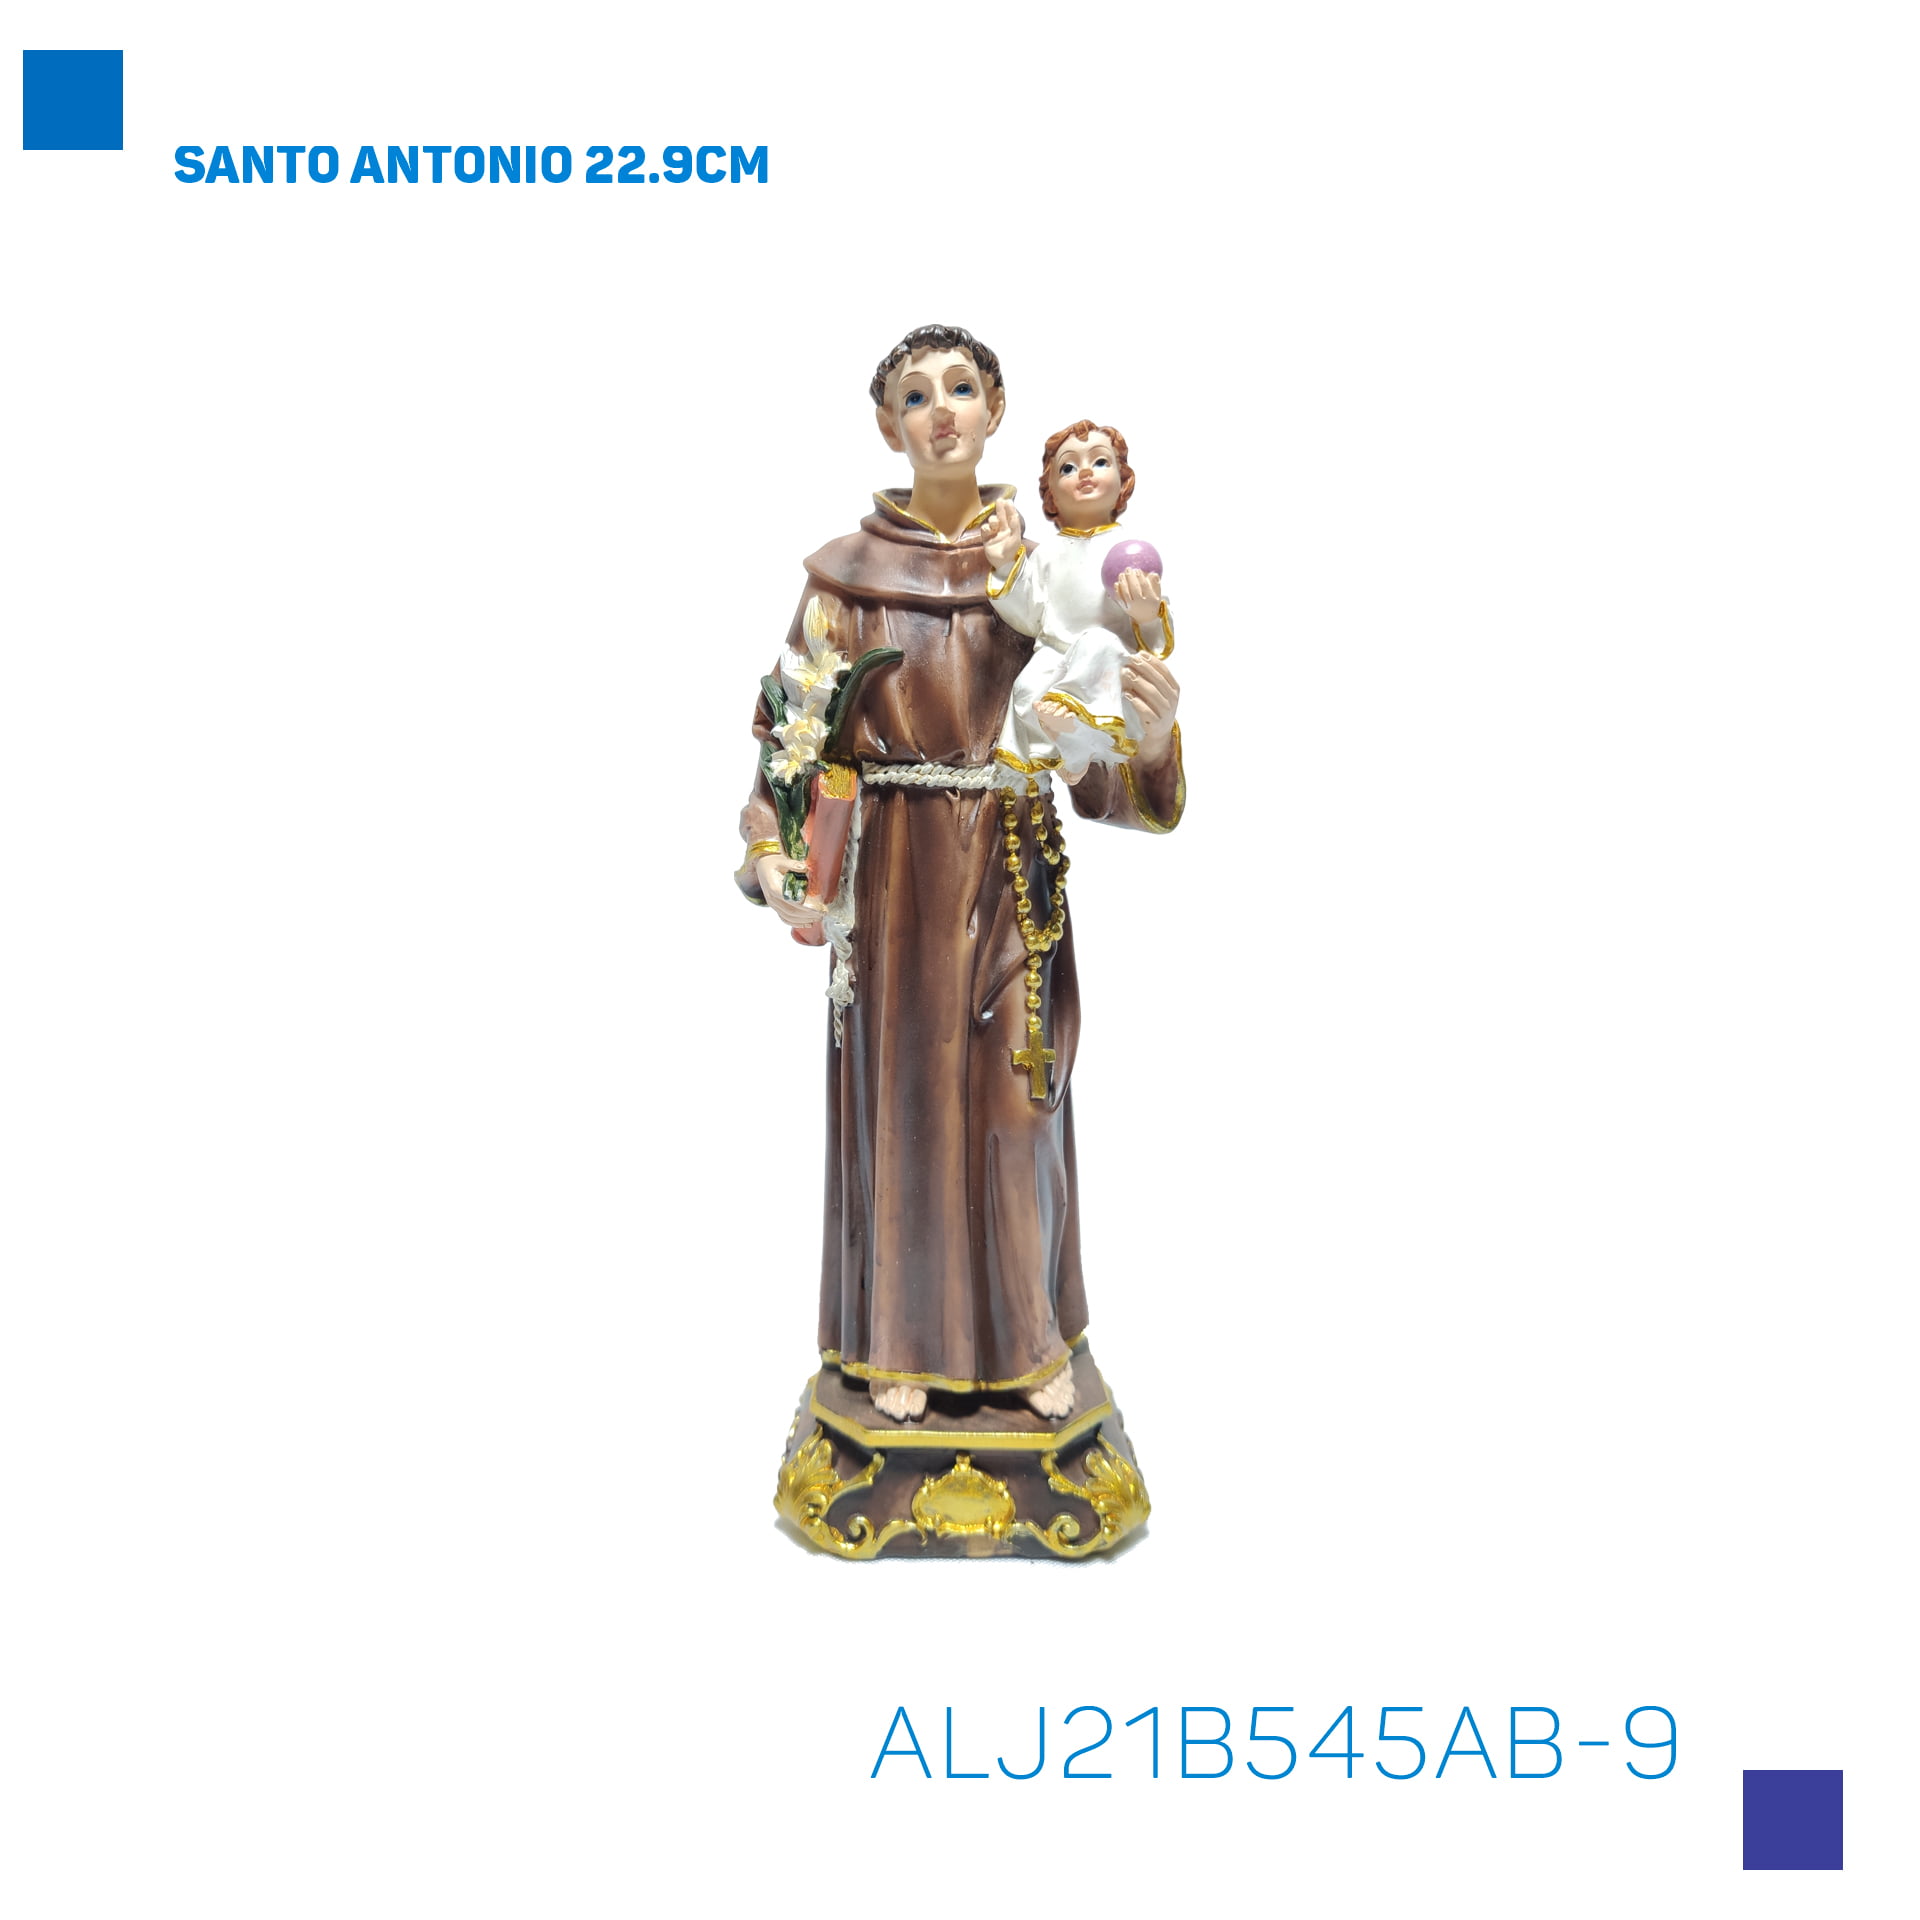 Bira Artigos Religiosos - SANTO ANTONIO 22.9CM - Cód . ALJ21B545AB-9